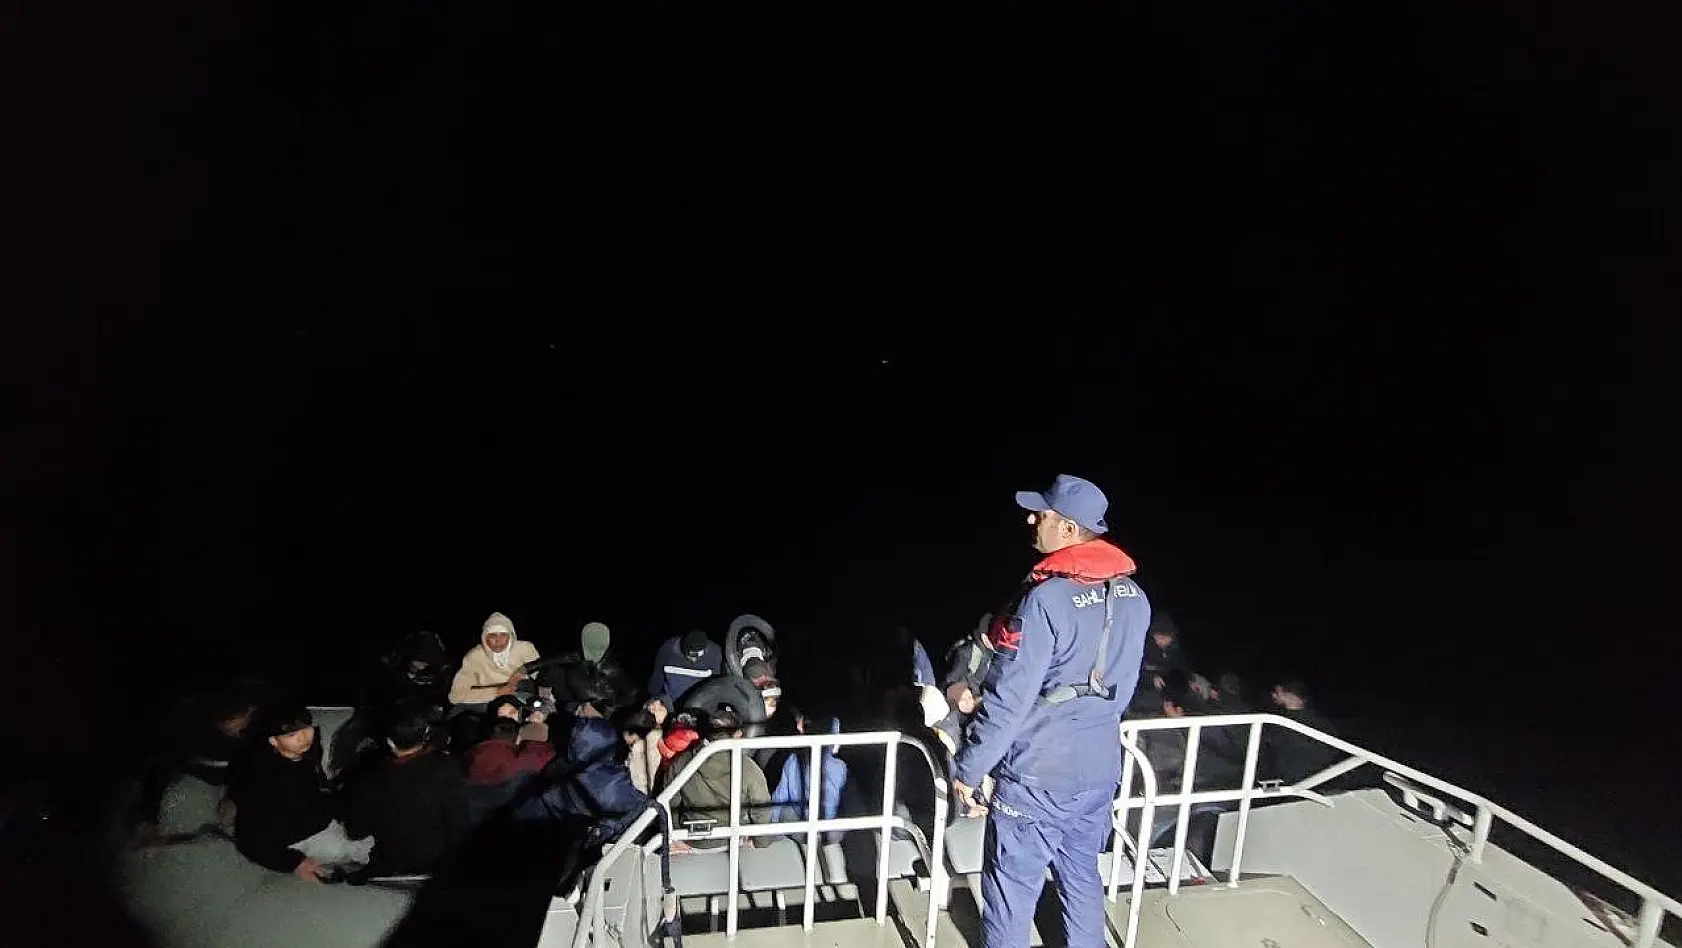 Ayvalık açıklarında 60 düzensiz göçmen yakalandı